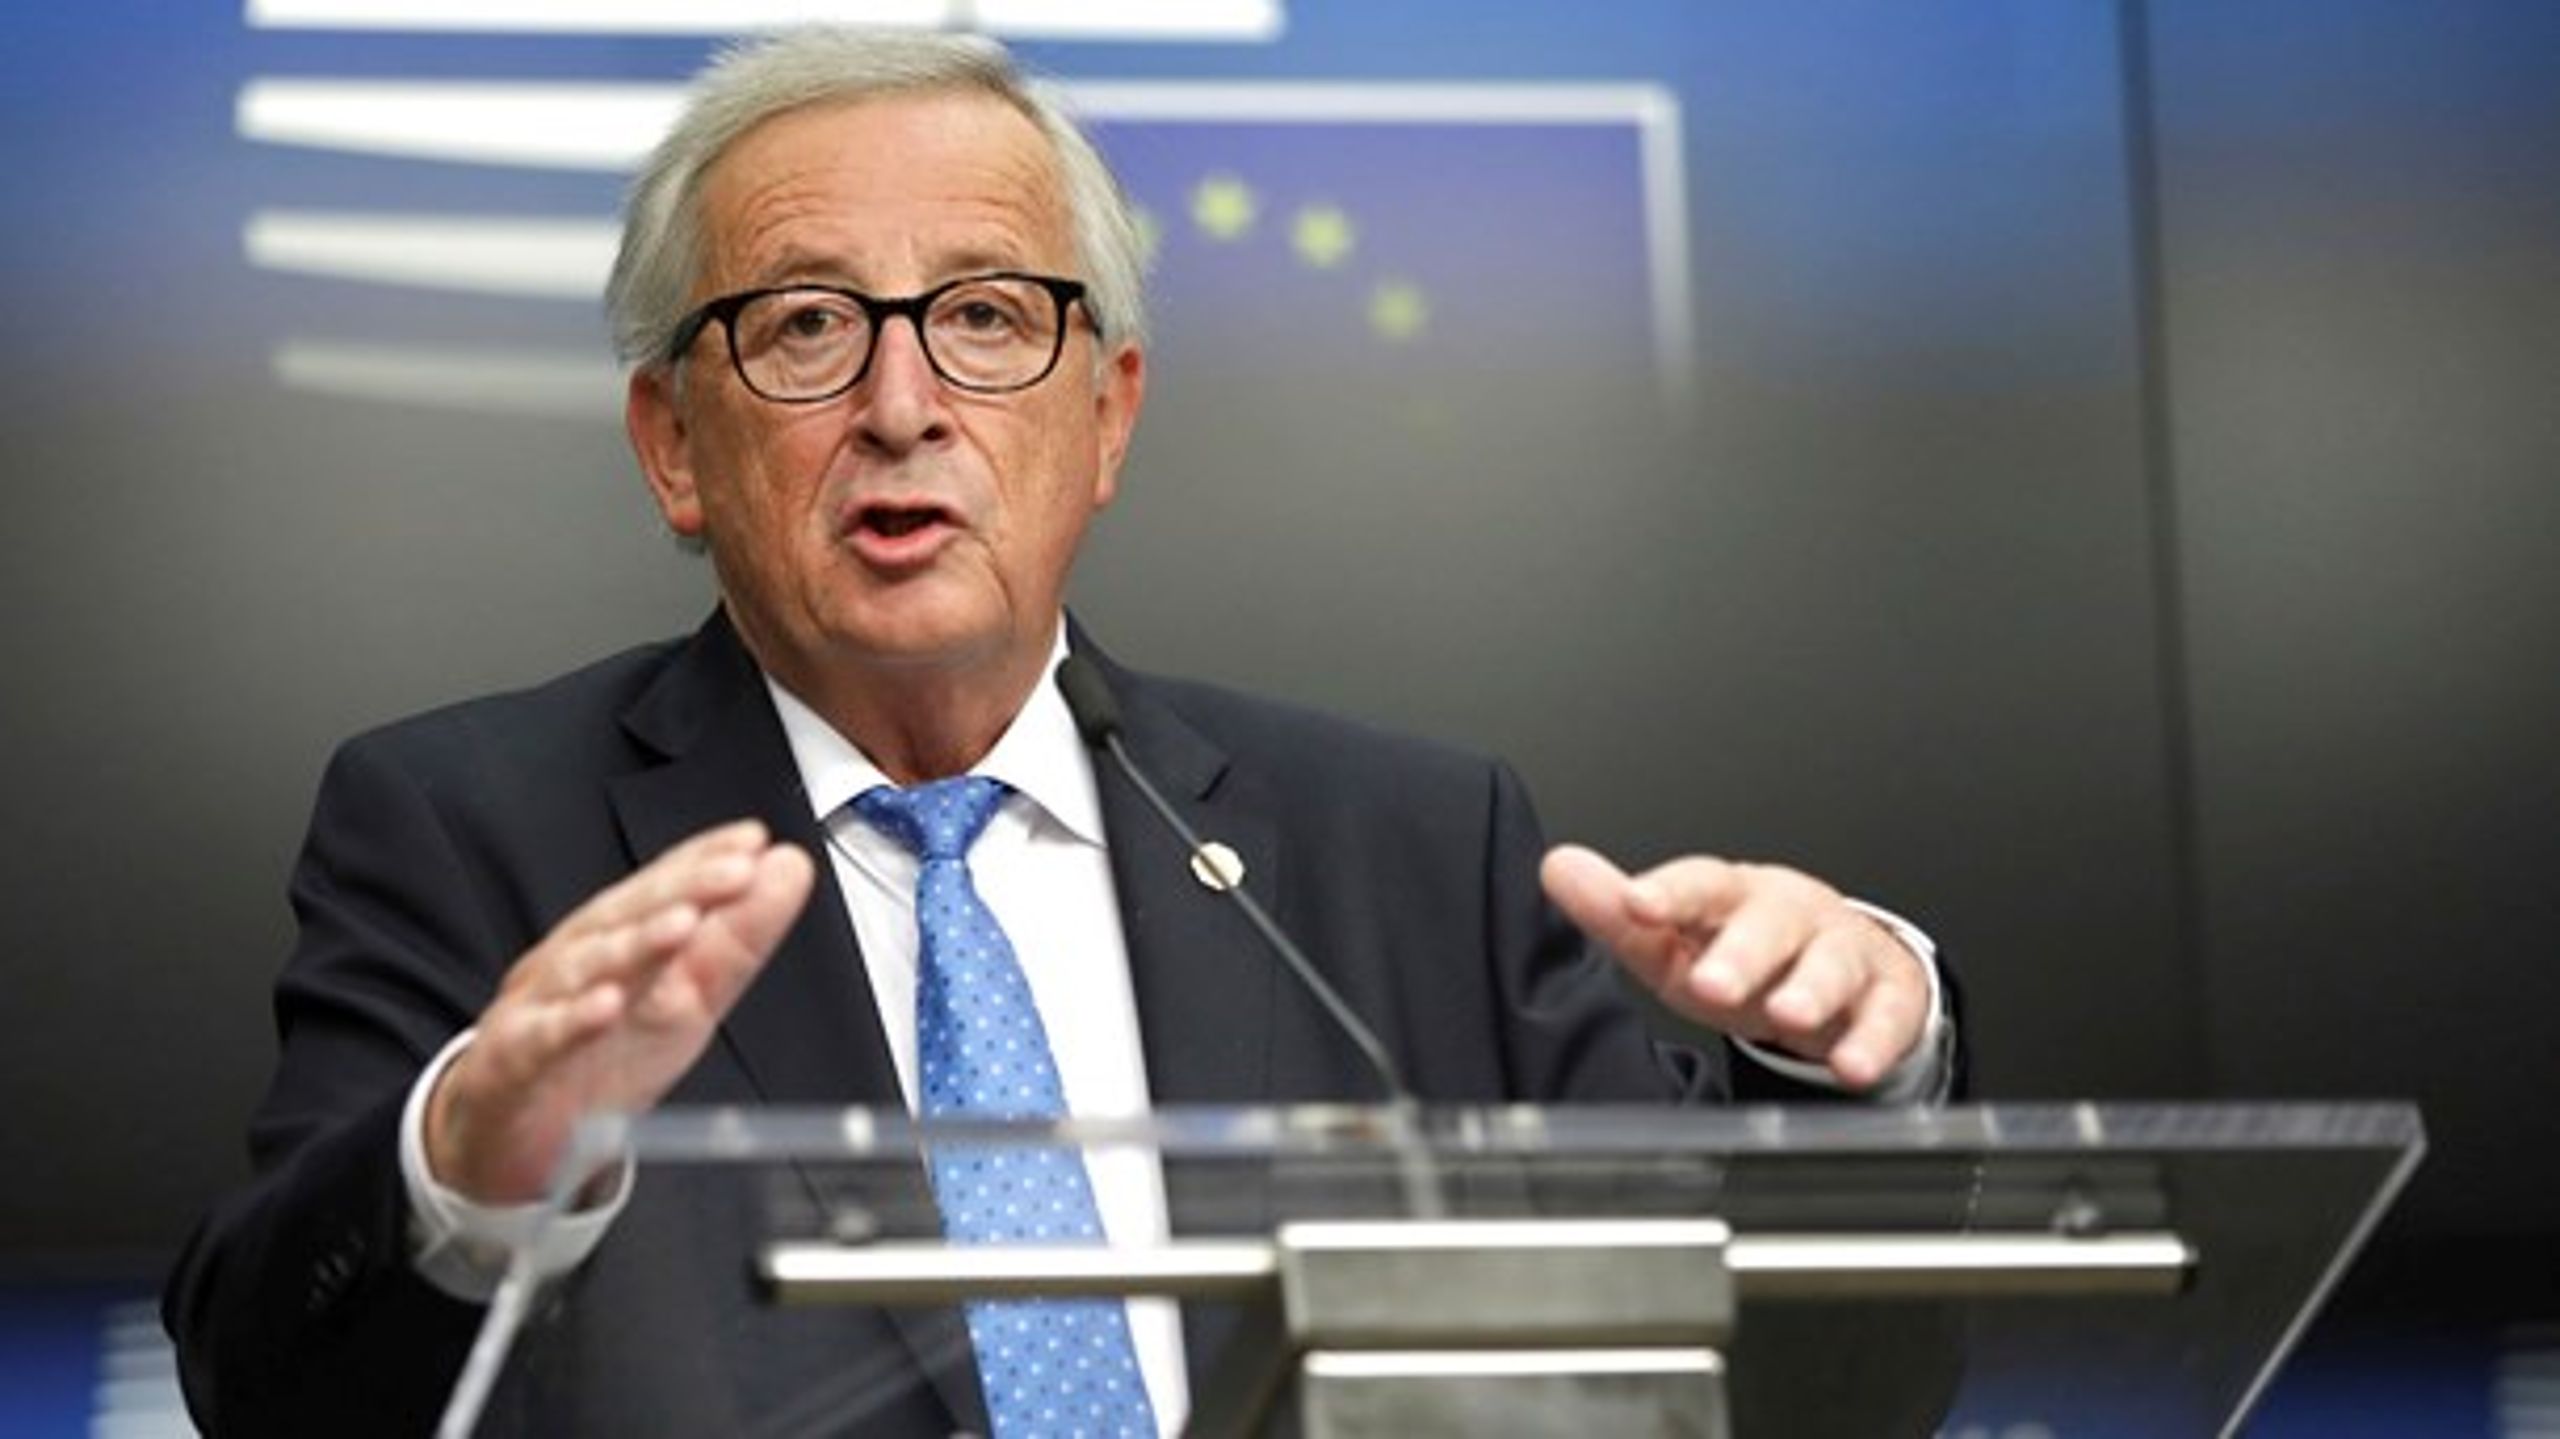 Det er sidste chance for at få sat europæiske fingeraftryk for EU-kommissionsformand&nbsp;Jean-Claude Juncker.